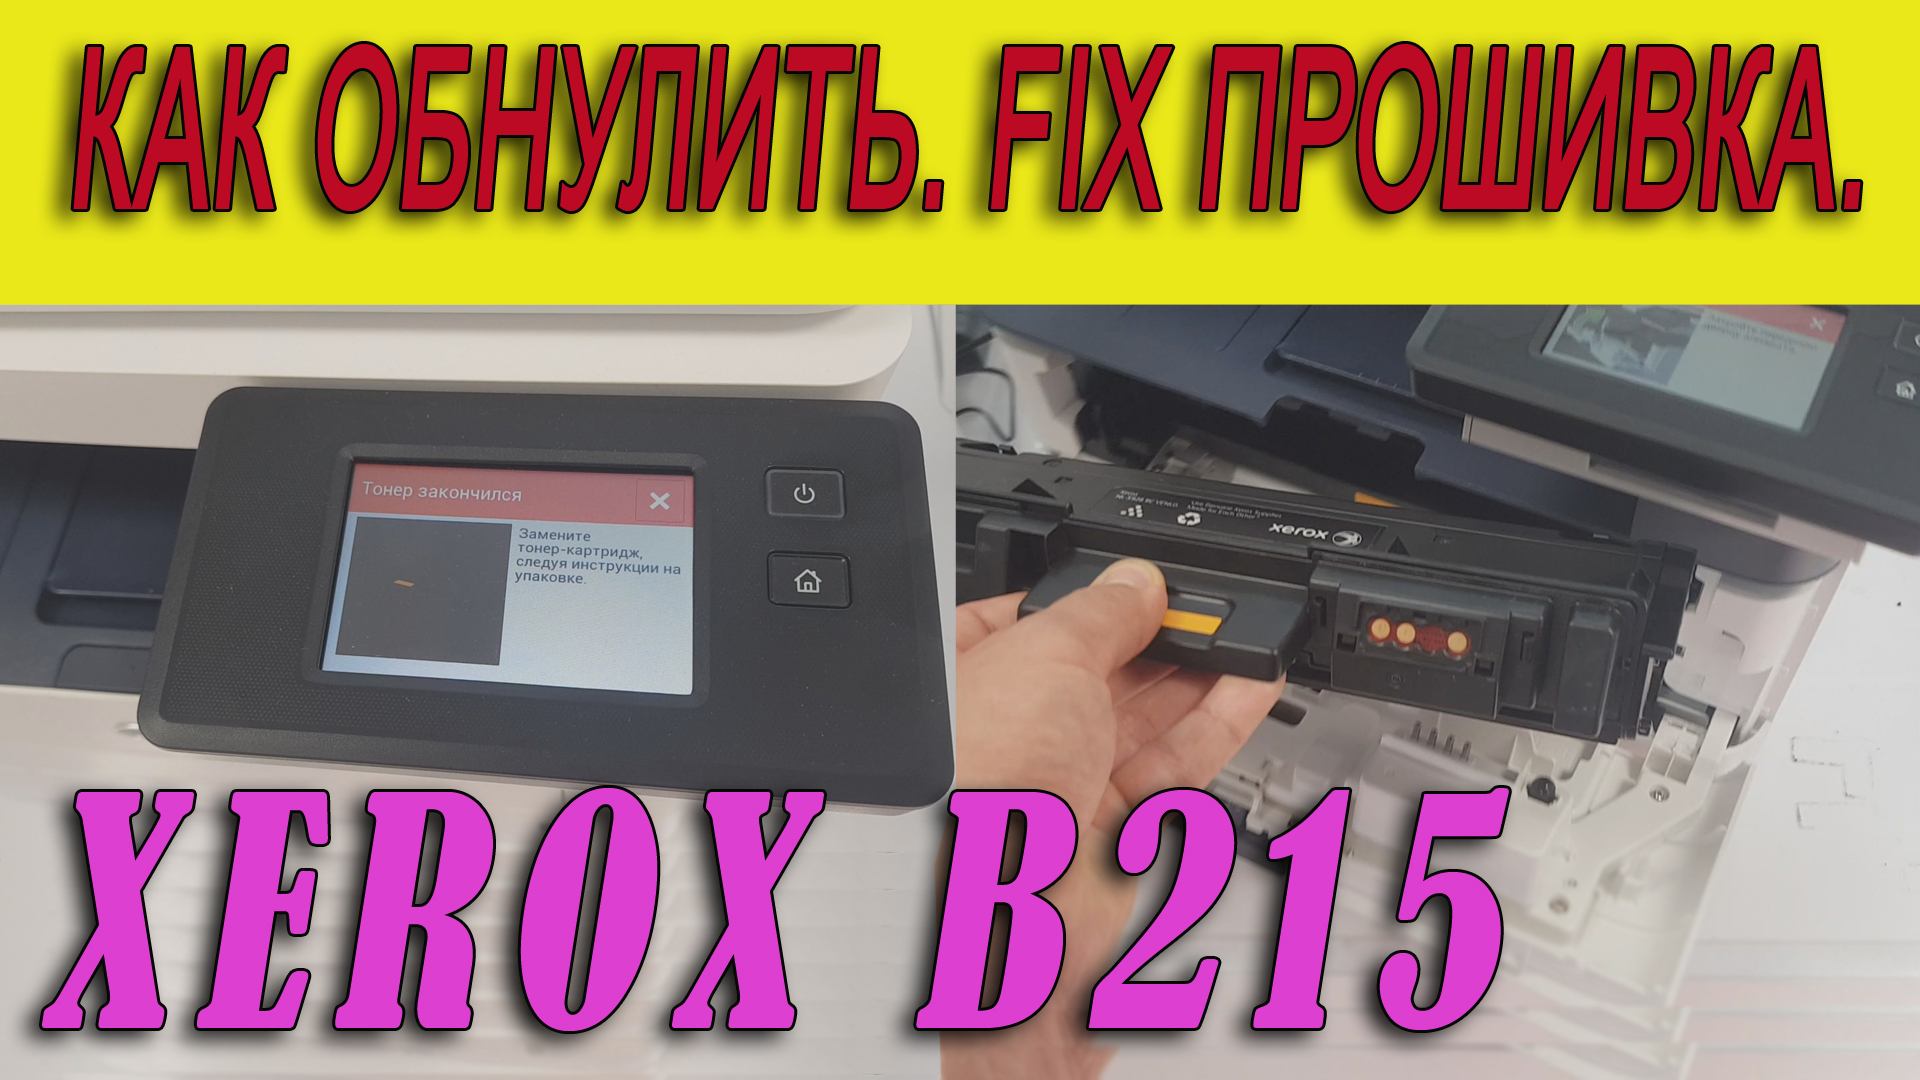 Прошивка принтера (МФУ) XEROX B215. Зачем? Как? Инструкция. Видео.